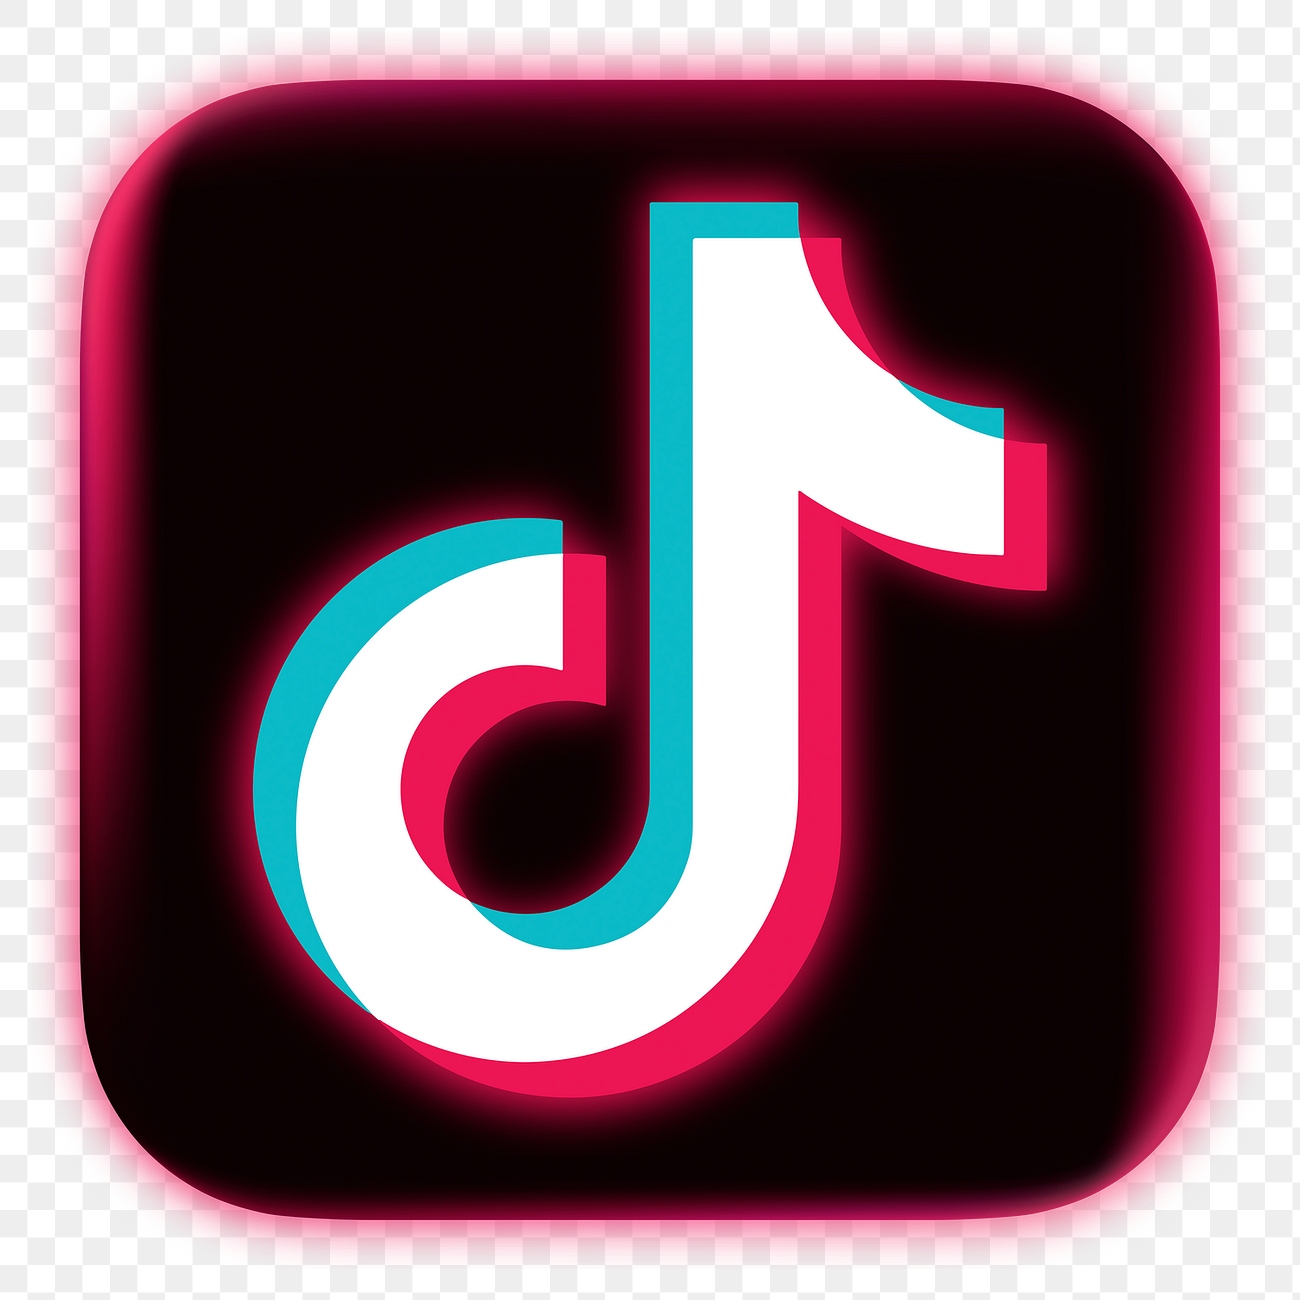 TikTok icon for social media | Premium Icons - rawpixel